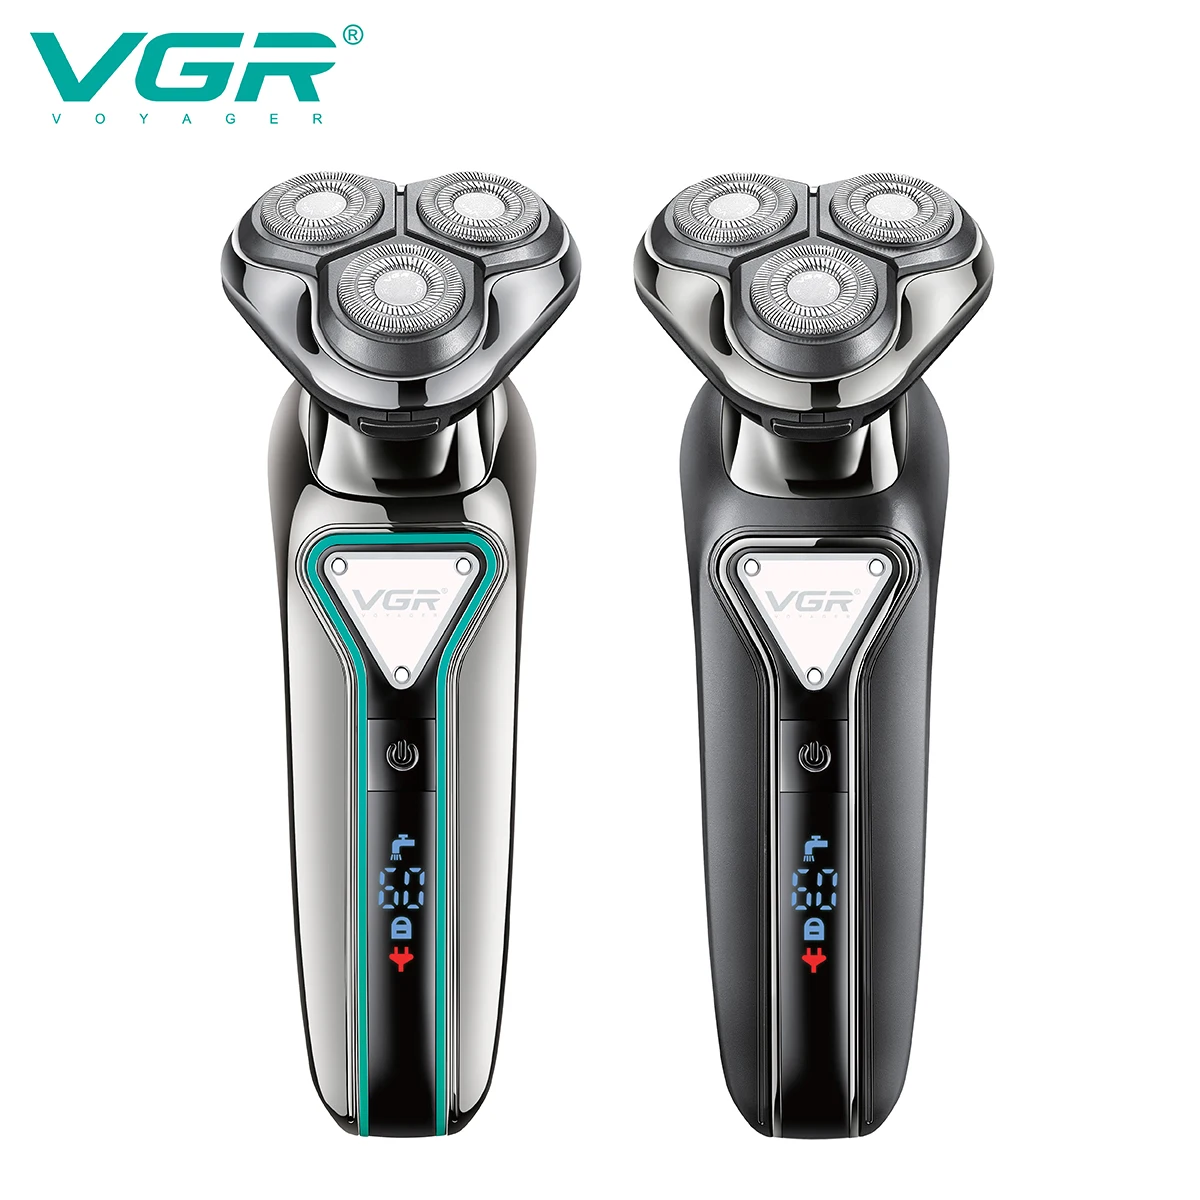 

VGR машинка для бритья Бритва для лица Профессиональный Триммер для волос Безопасность Электробритва IPX7 Водонепроницаемый Портативный беспроводной Бритвенный станок для мужчин V-323